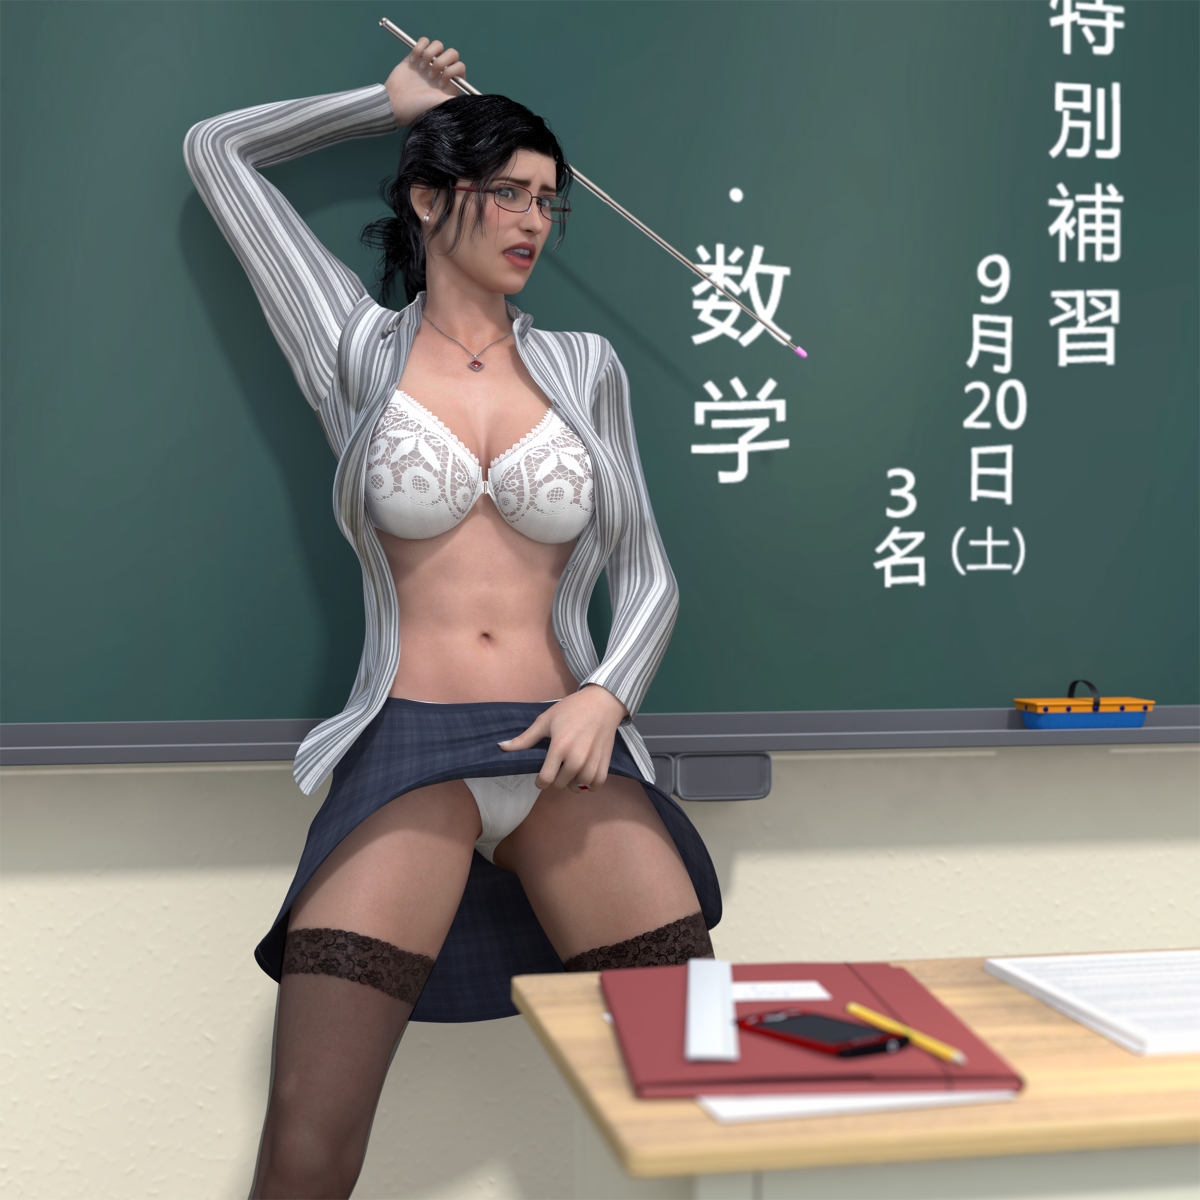 Women Teacher Sex 3d Comic Porn - Hiromi Female Teacher 1 - Porn Cartoon Comics